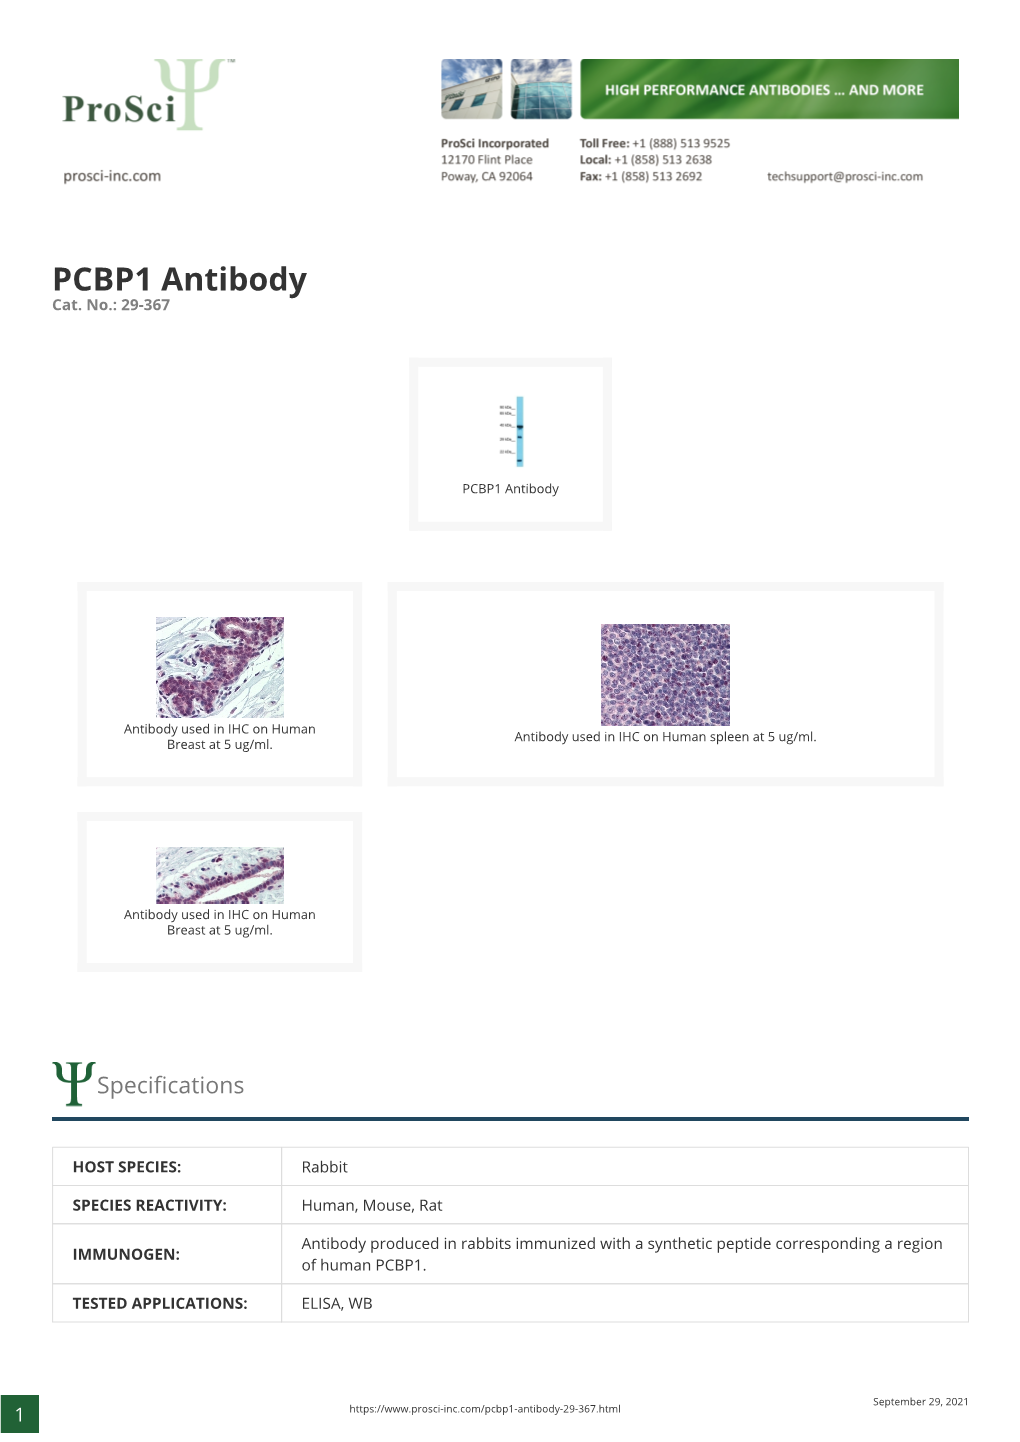 PCBP1 Antibody Cat